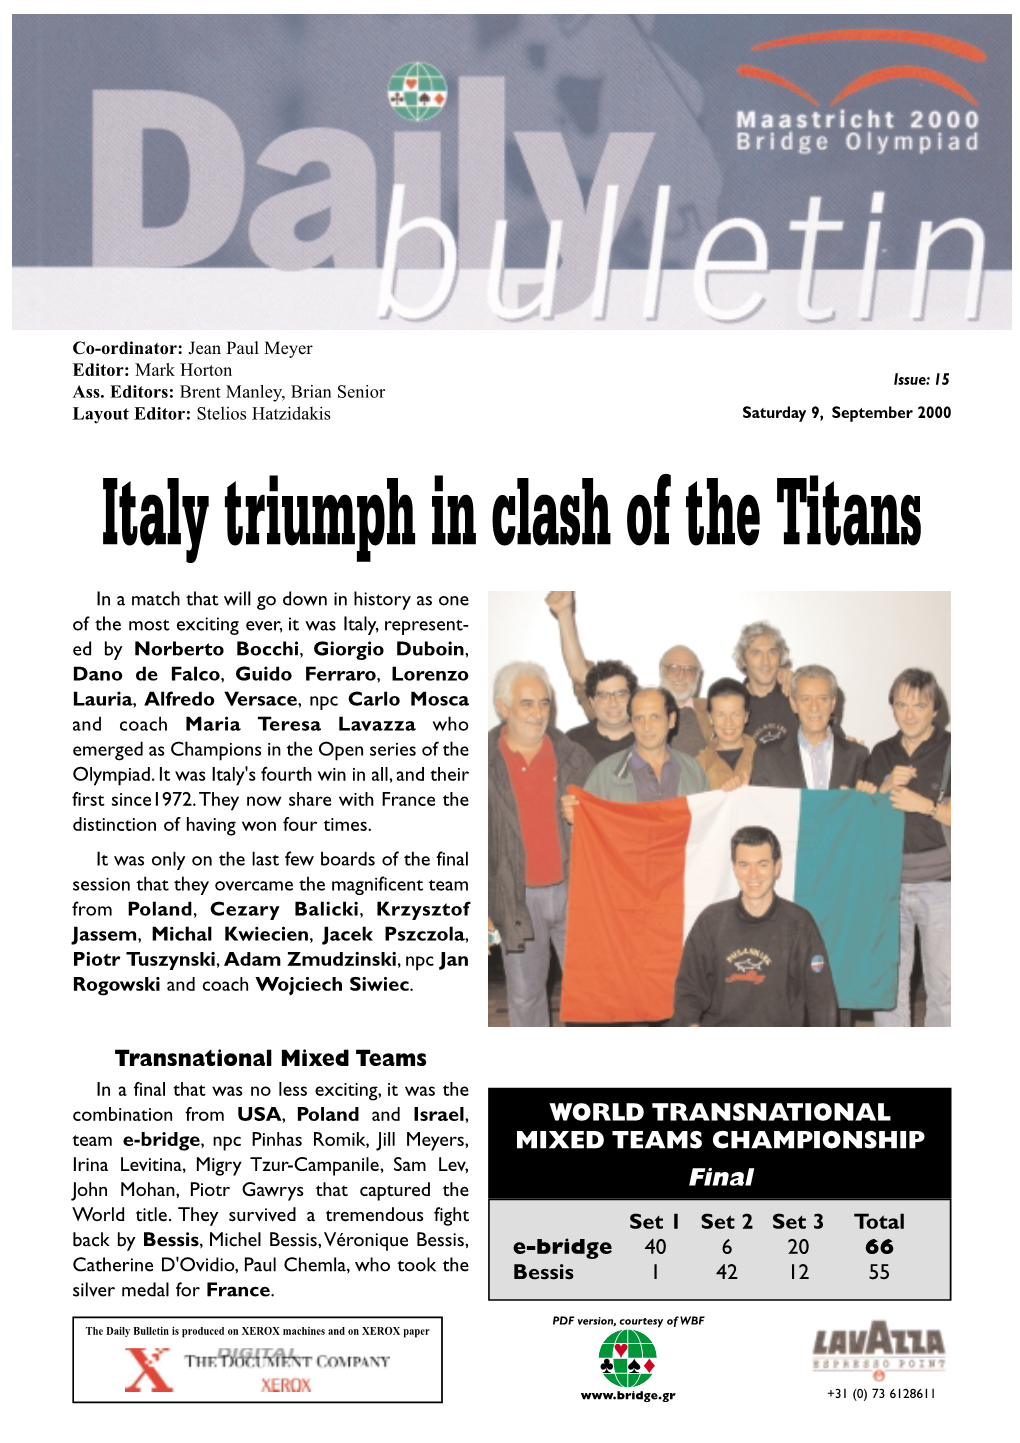 Italy Triumph in Clash of the Titans